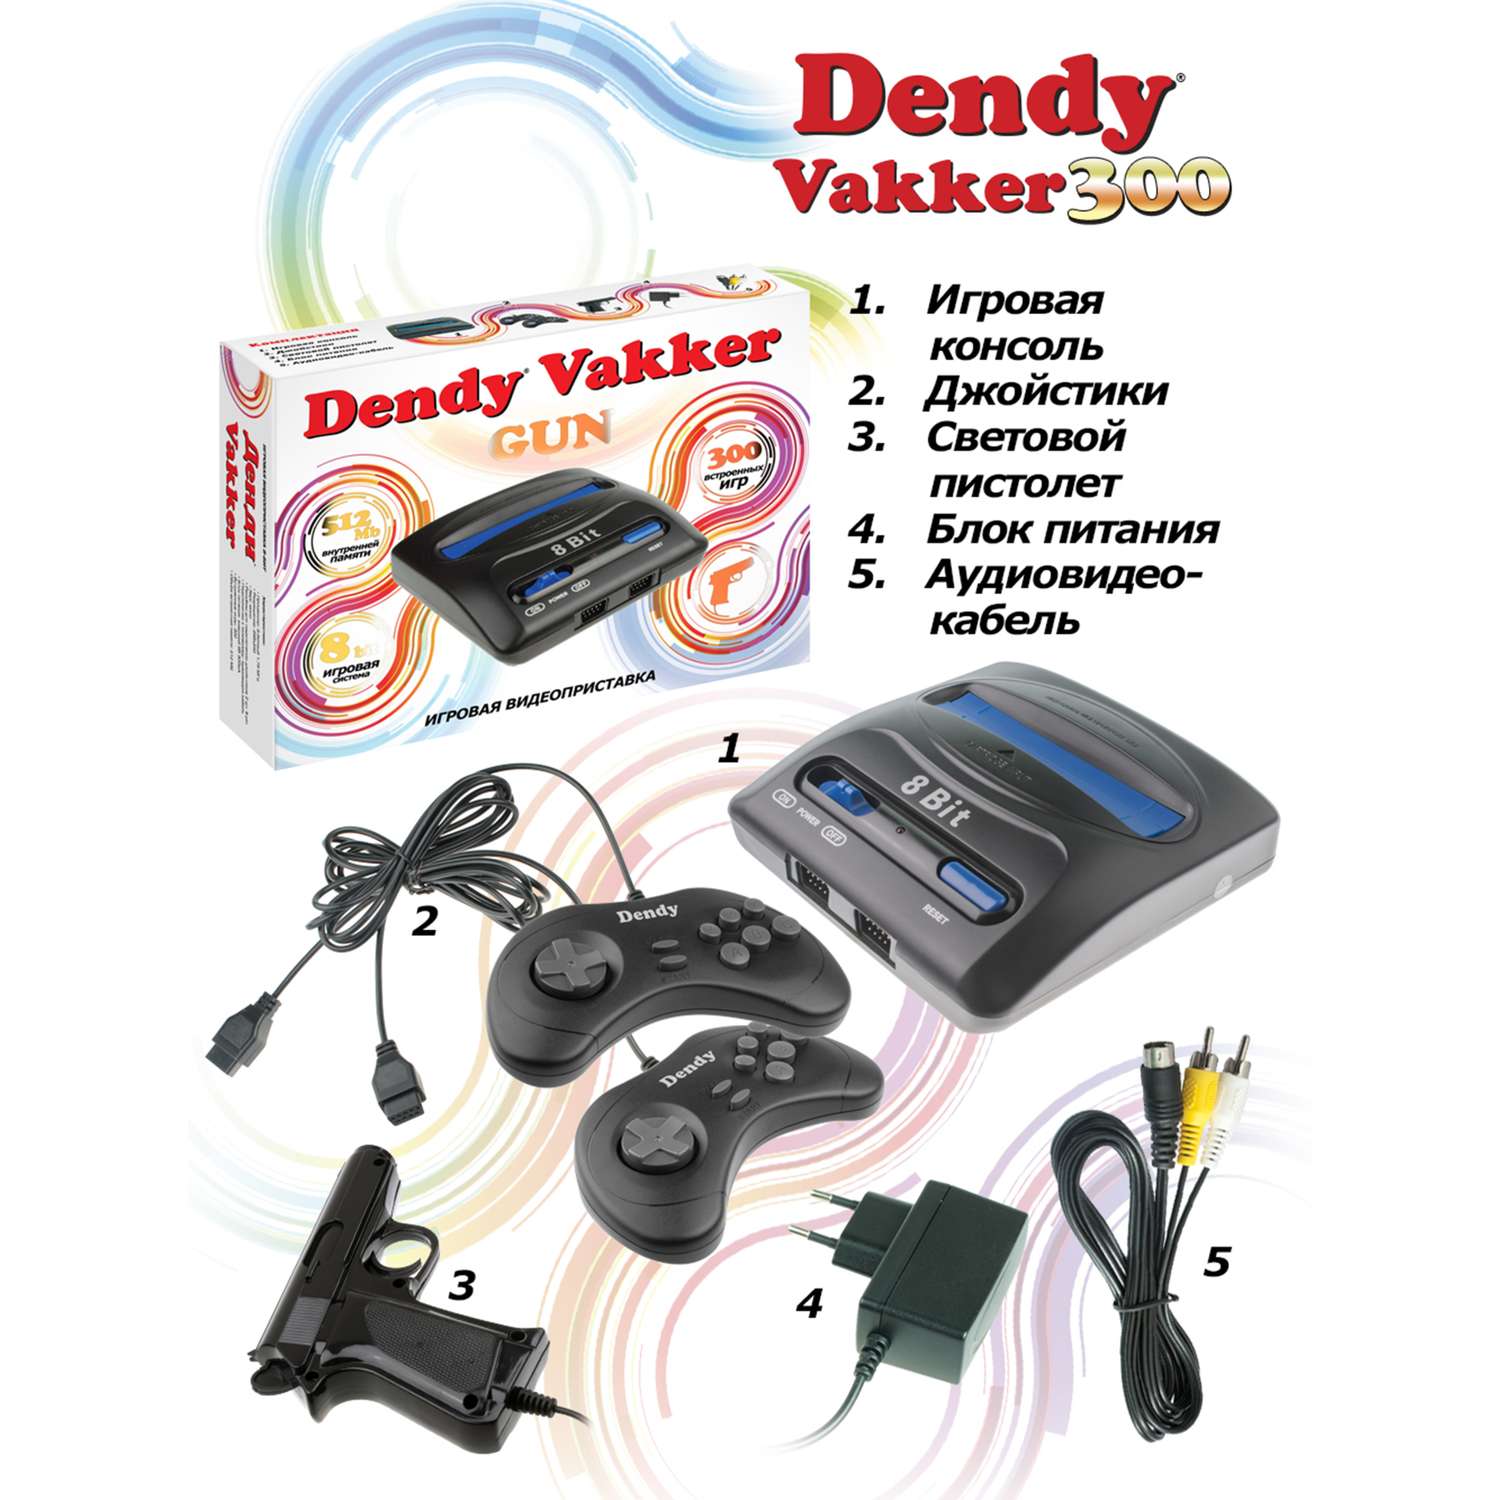 Игровая приставка Dendy Dendy Vakker 300 игр - фото 3